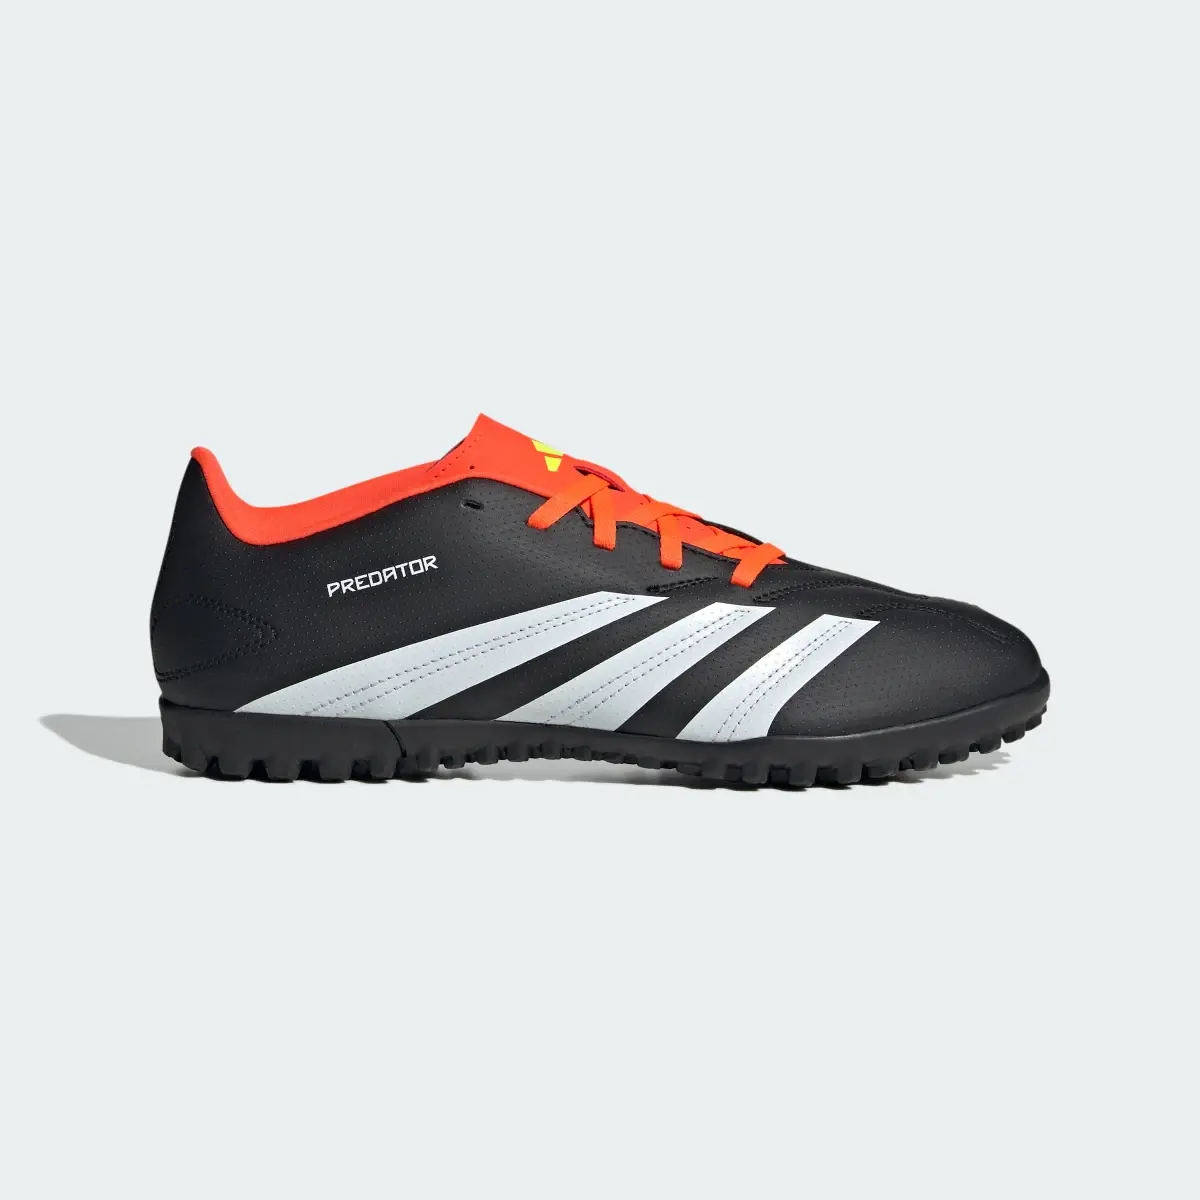 Adidas Predator Club Turf Football Boots. 2